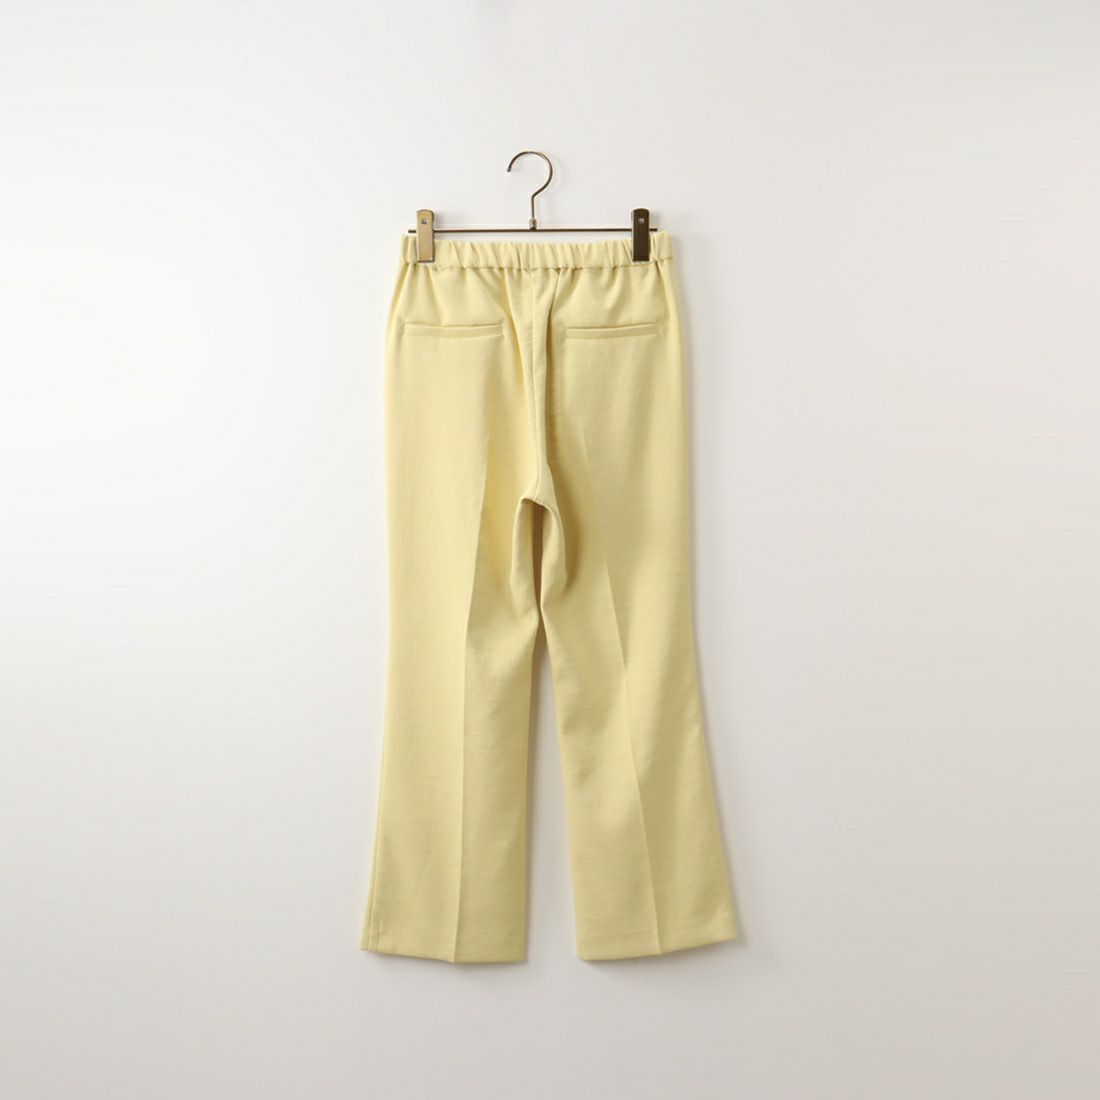 Jeans Factory Clothes [ジーンズファクトリークローズ] フルダルエアーセミフレアパンツ [217060] 41 ｲｴﾛｰ